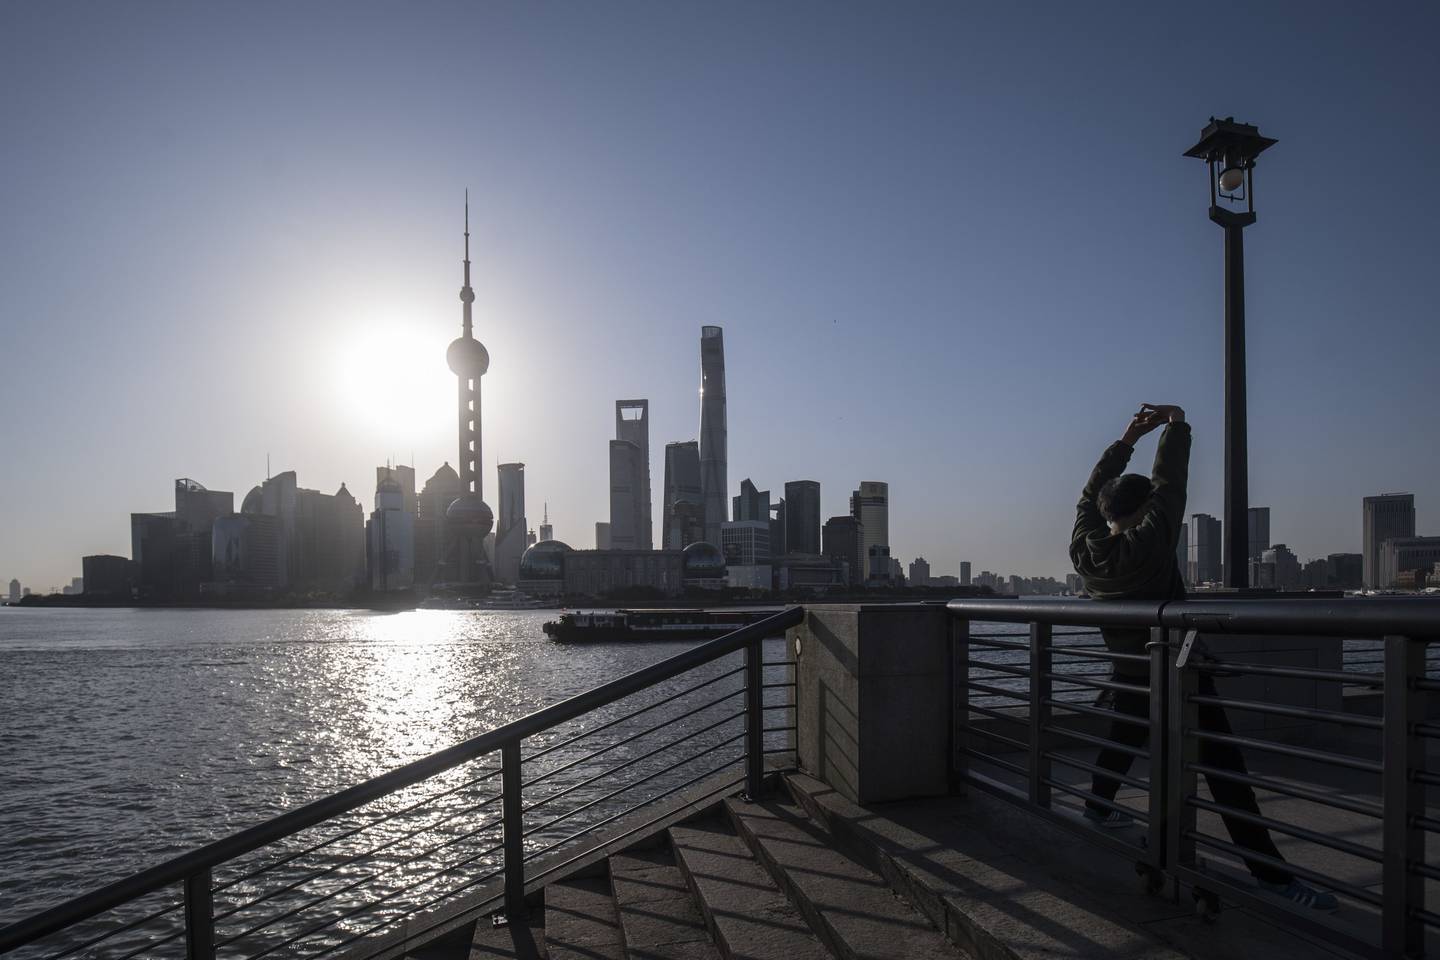 Autoridades chinesas correm para estancar baixa nas bolsas